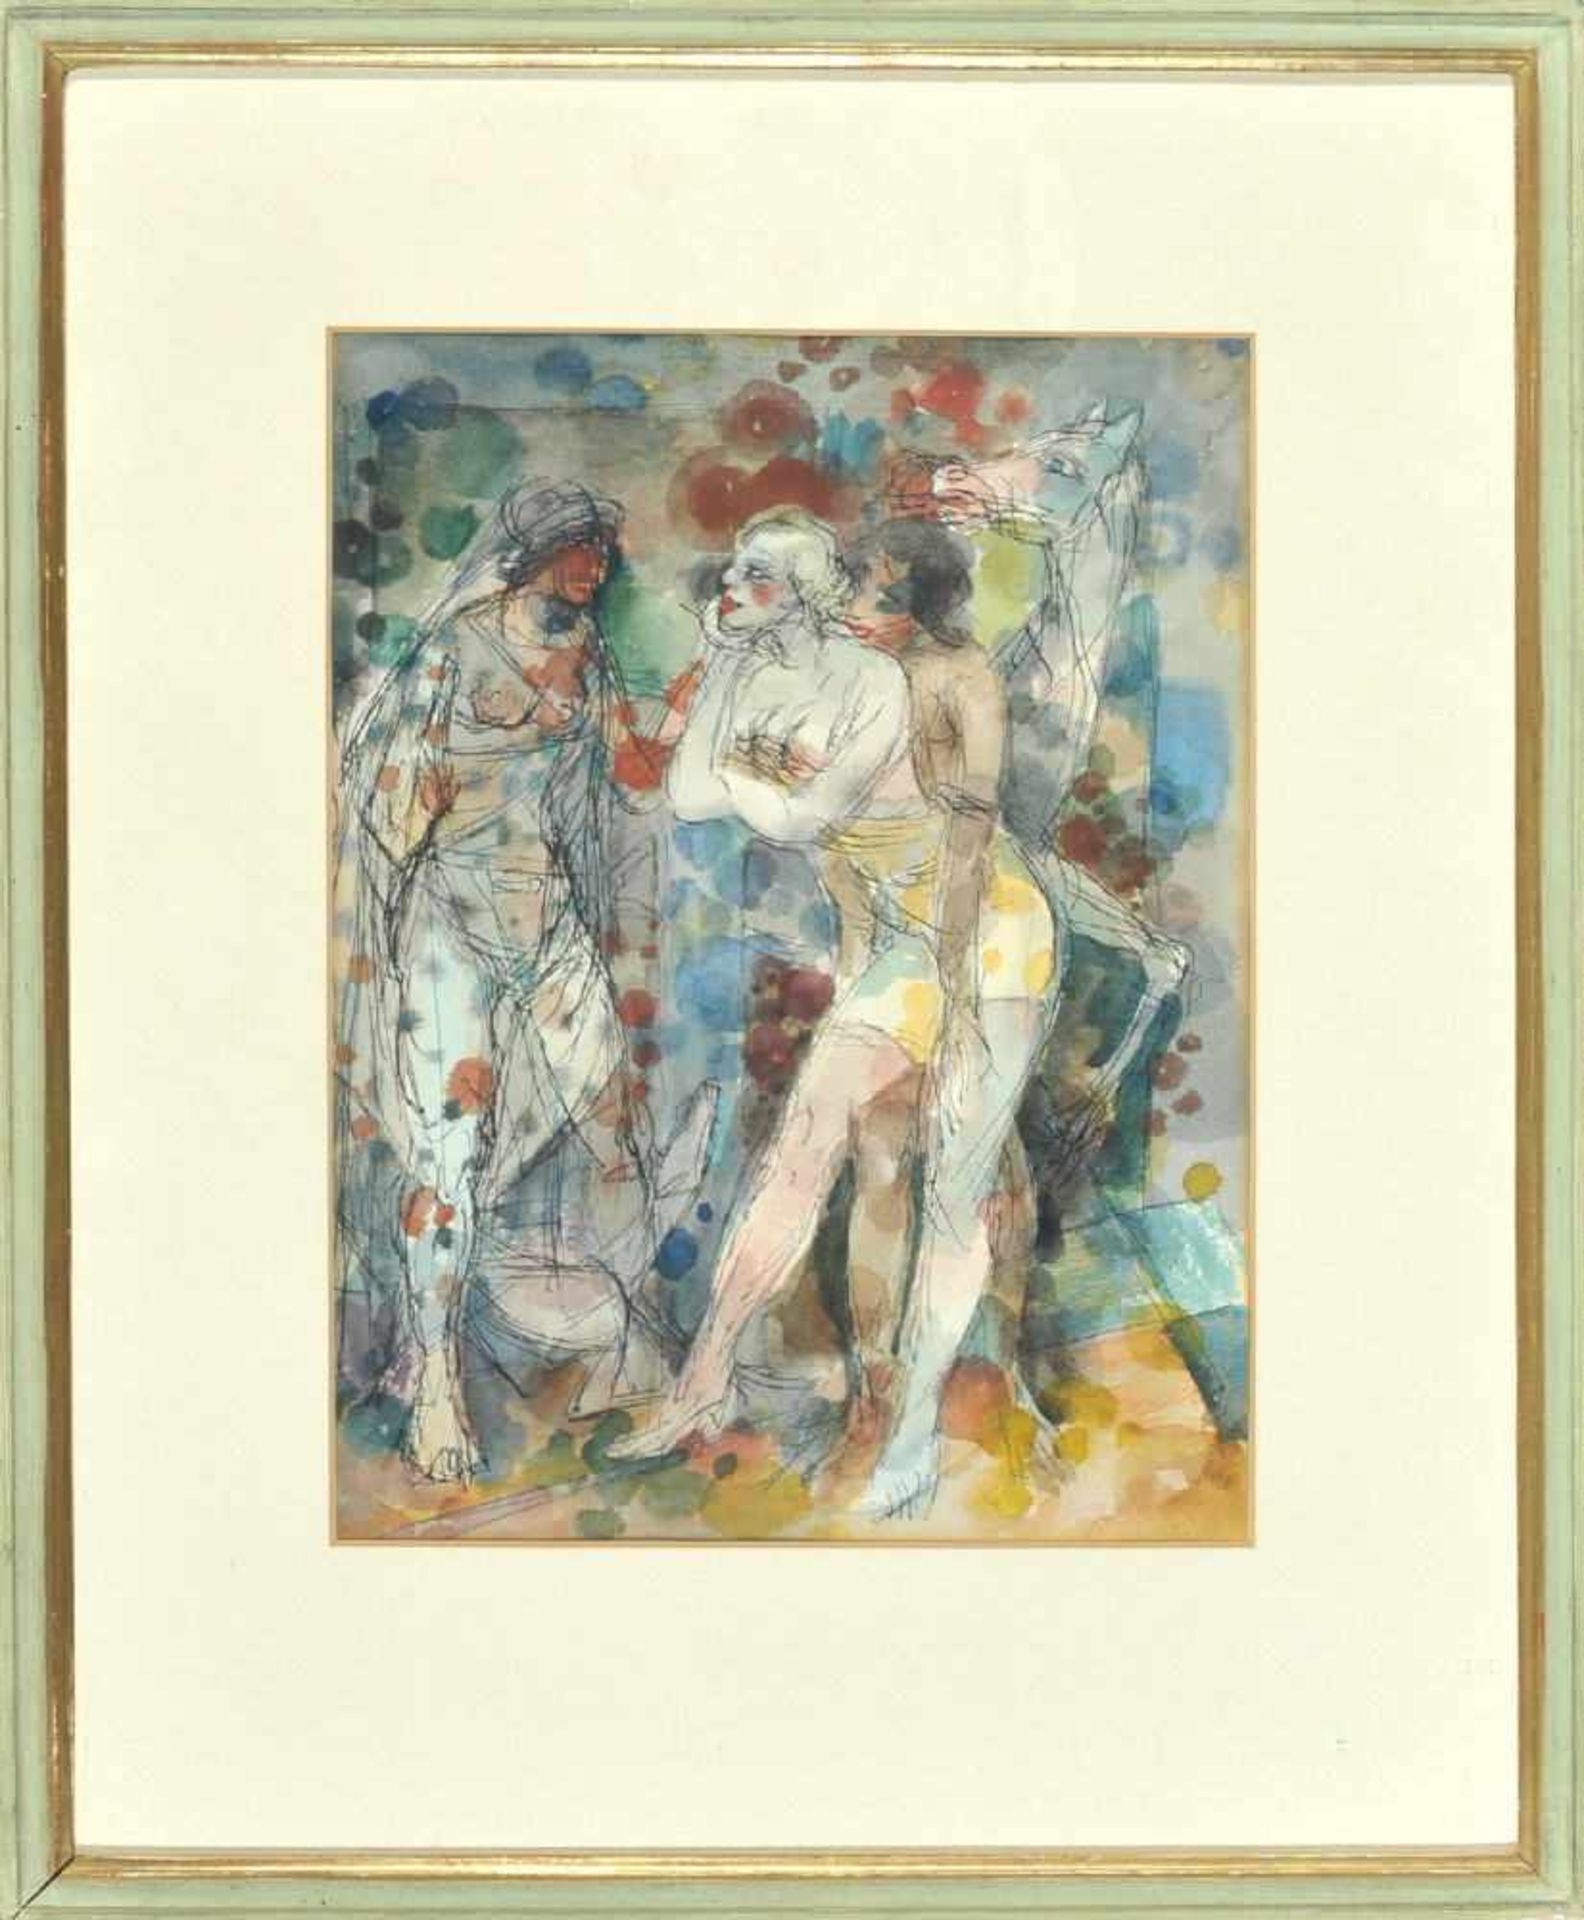 Buchty, Josef, 1896 Aachen - 1966 Garmisch-PartenkirchenAquarell, 28 x 21,5 cm, " Figuren ",